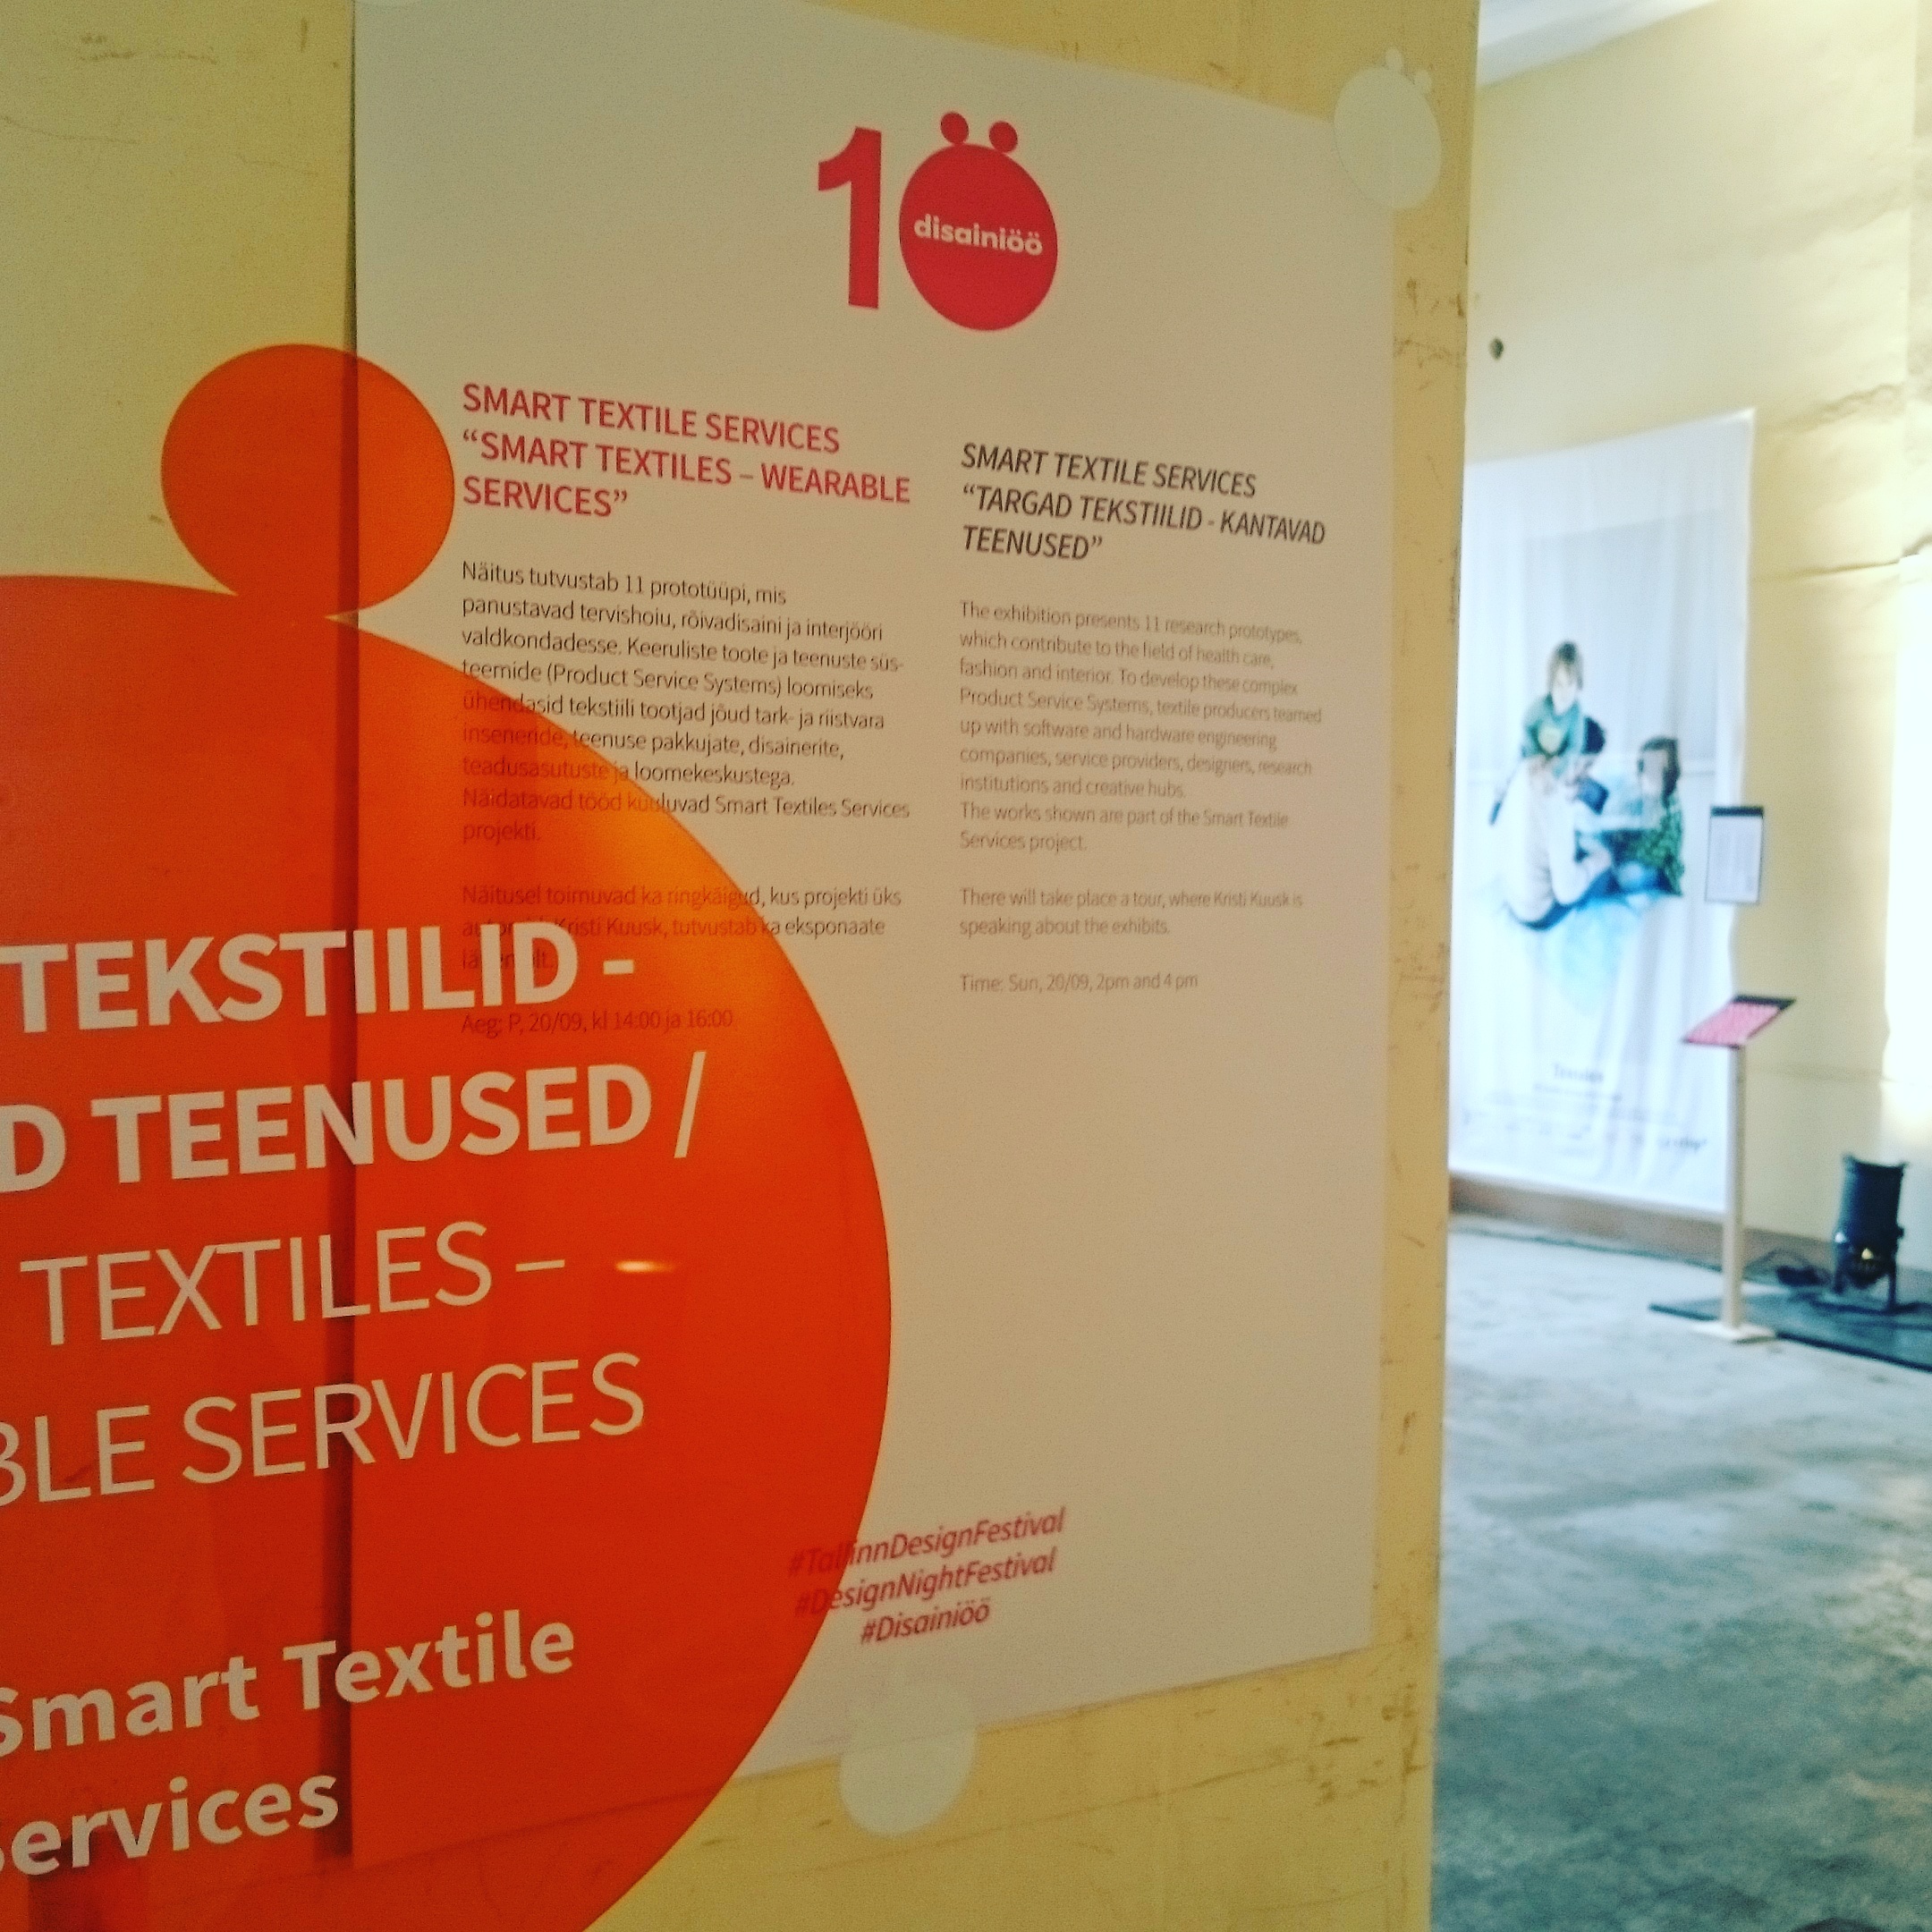 Smart Textiles - Wearable Services. Photo: Kristi Kuusk